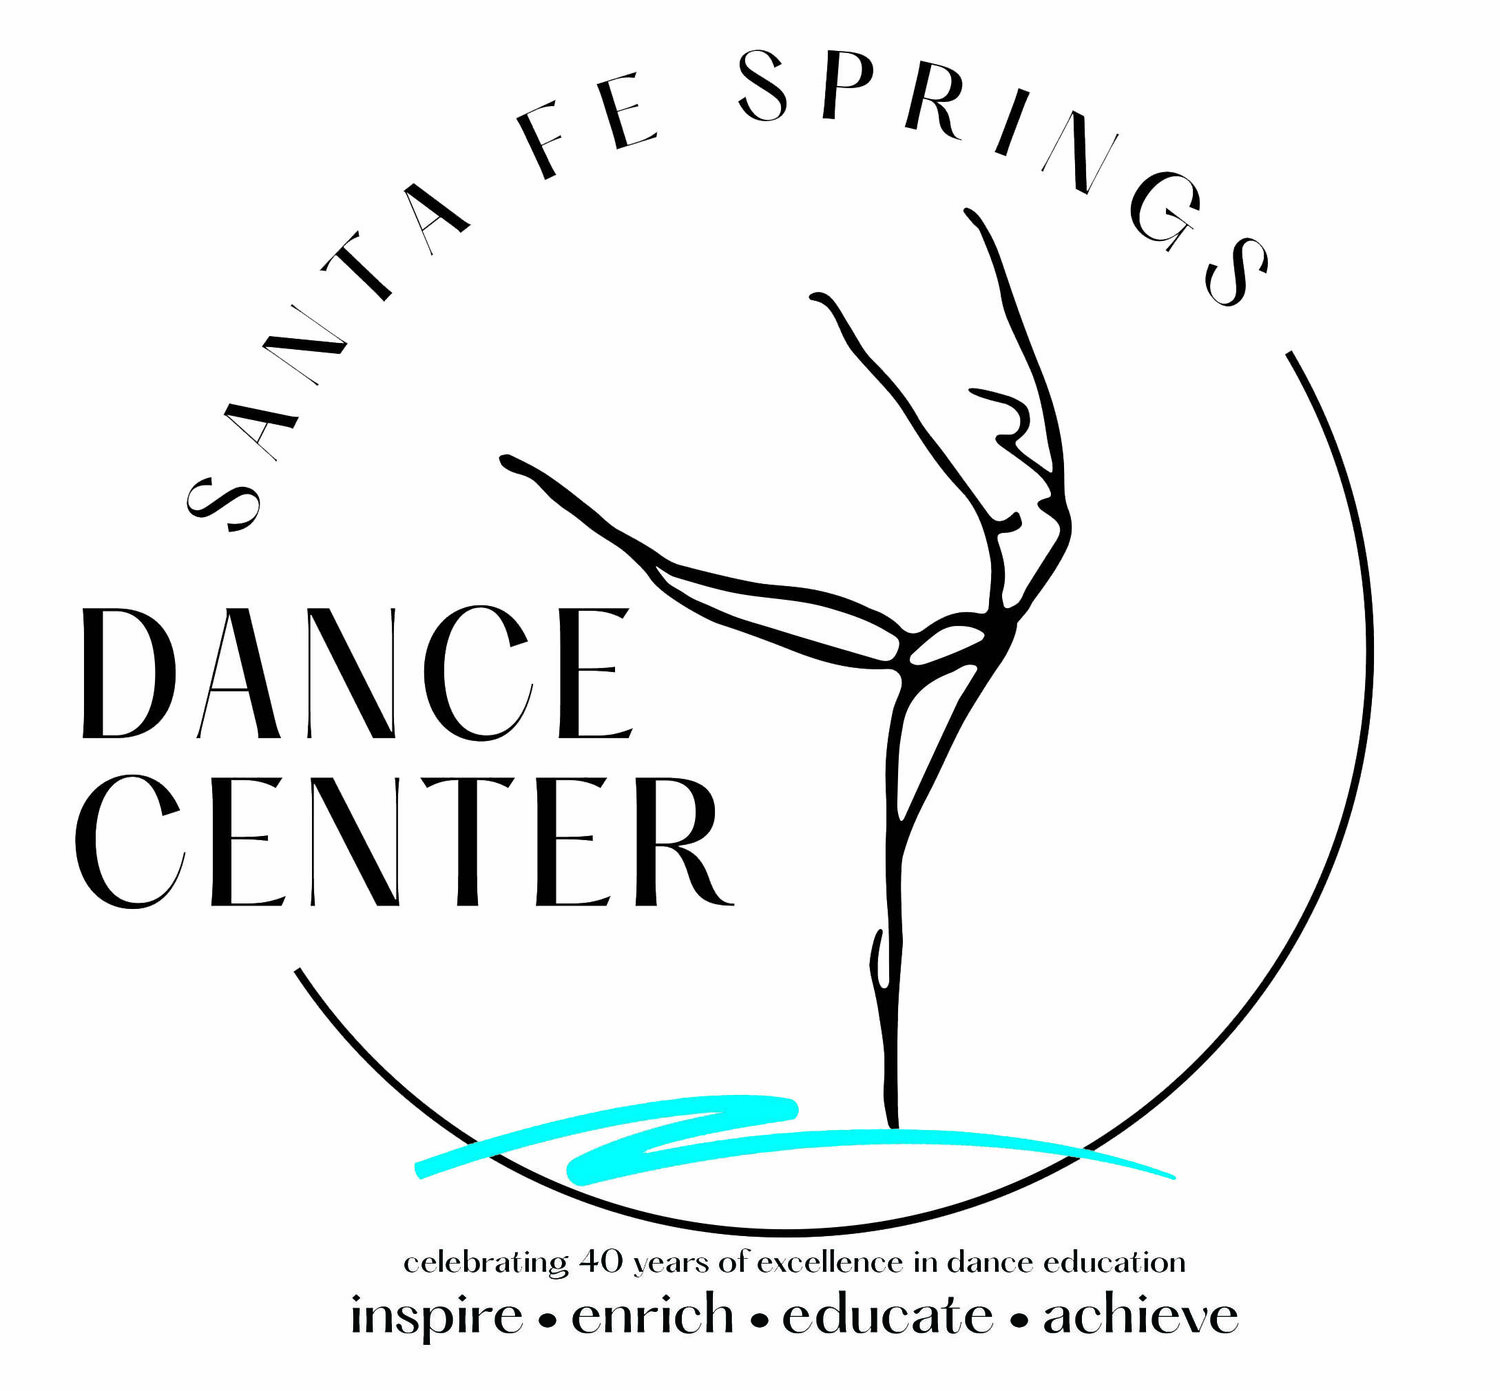 Santa Fe Springs Dance Center